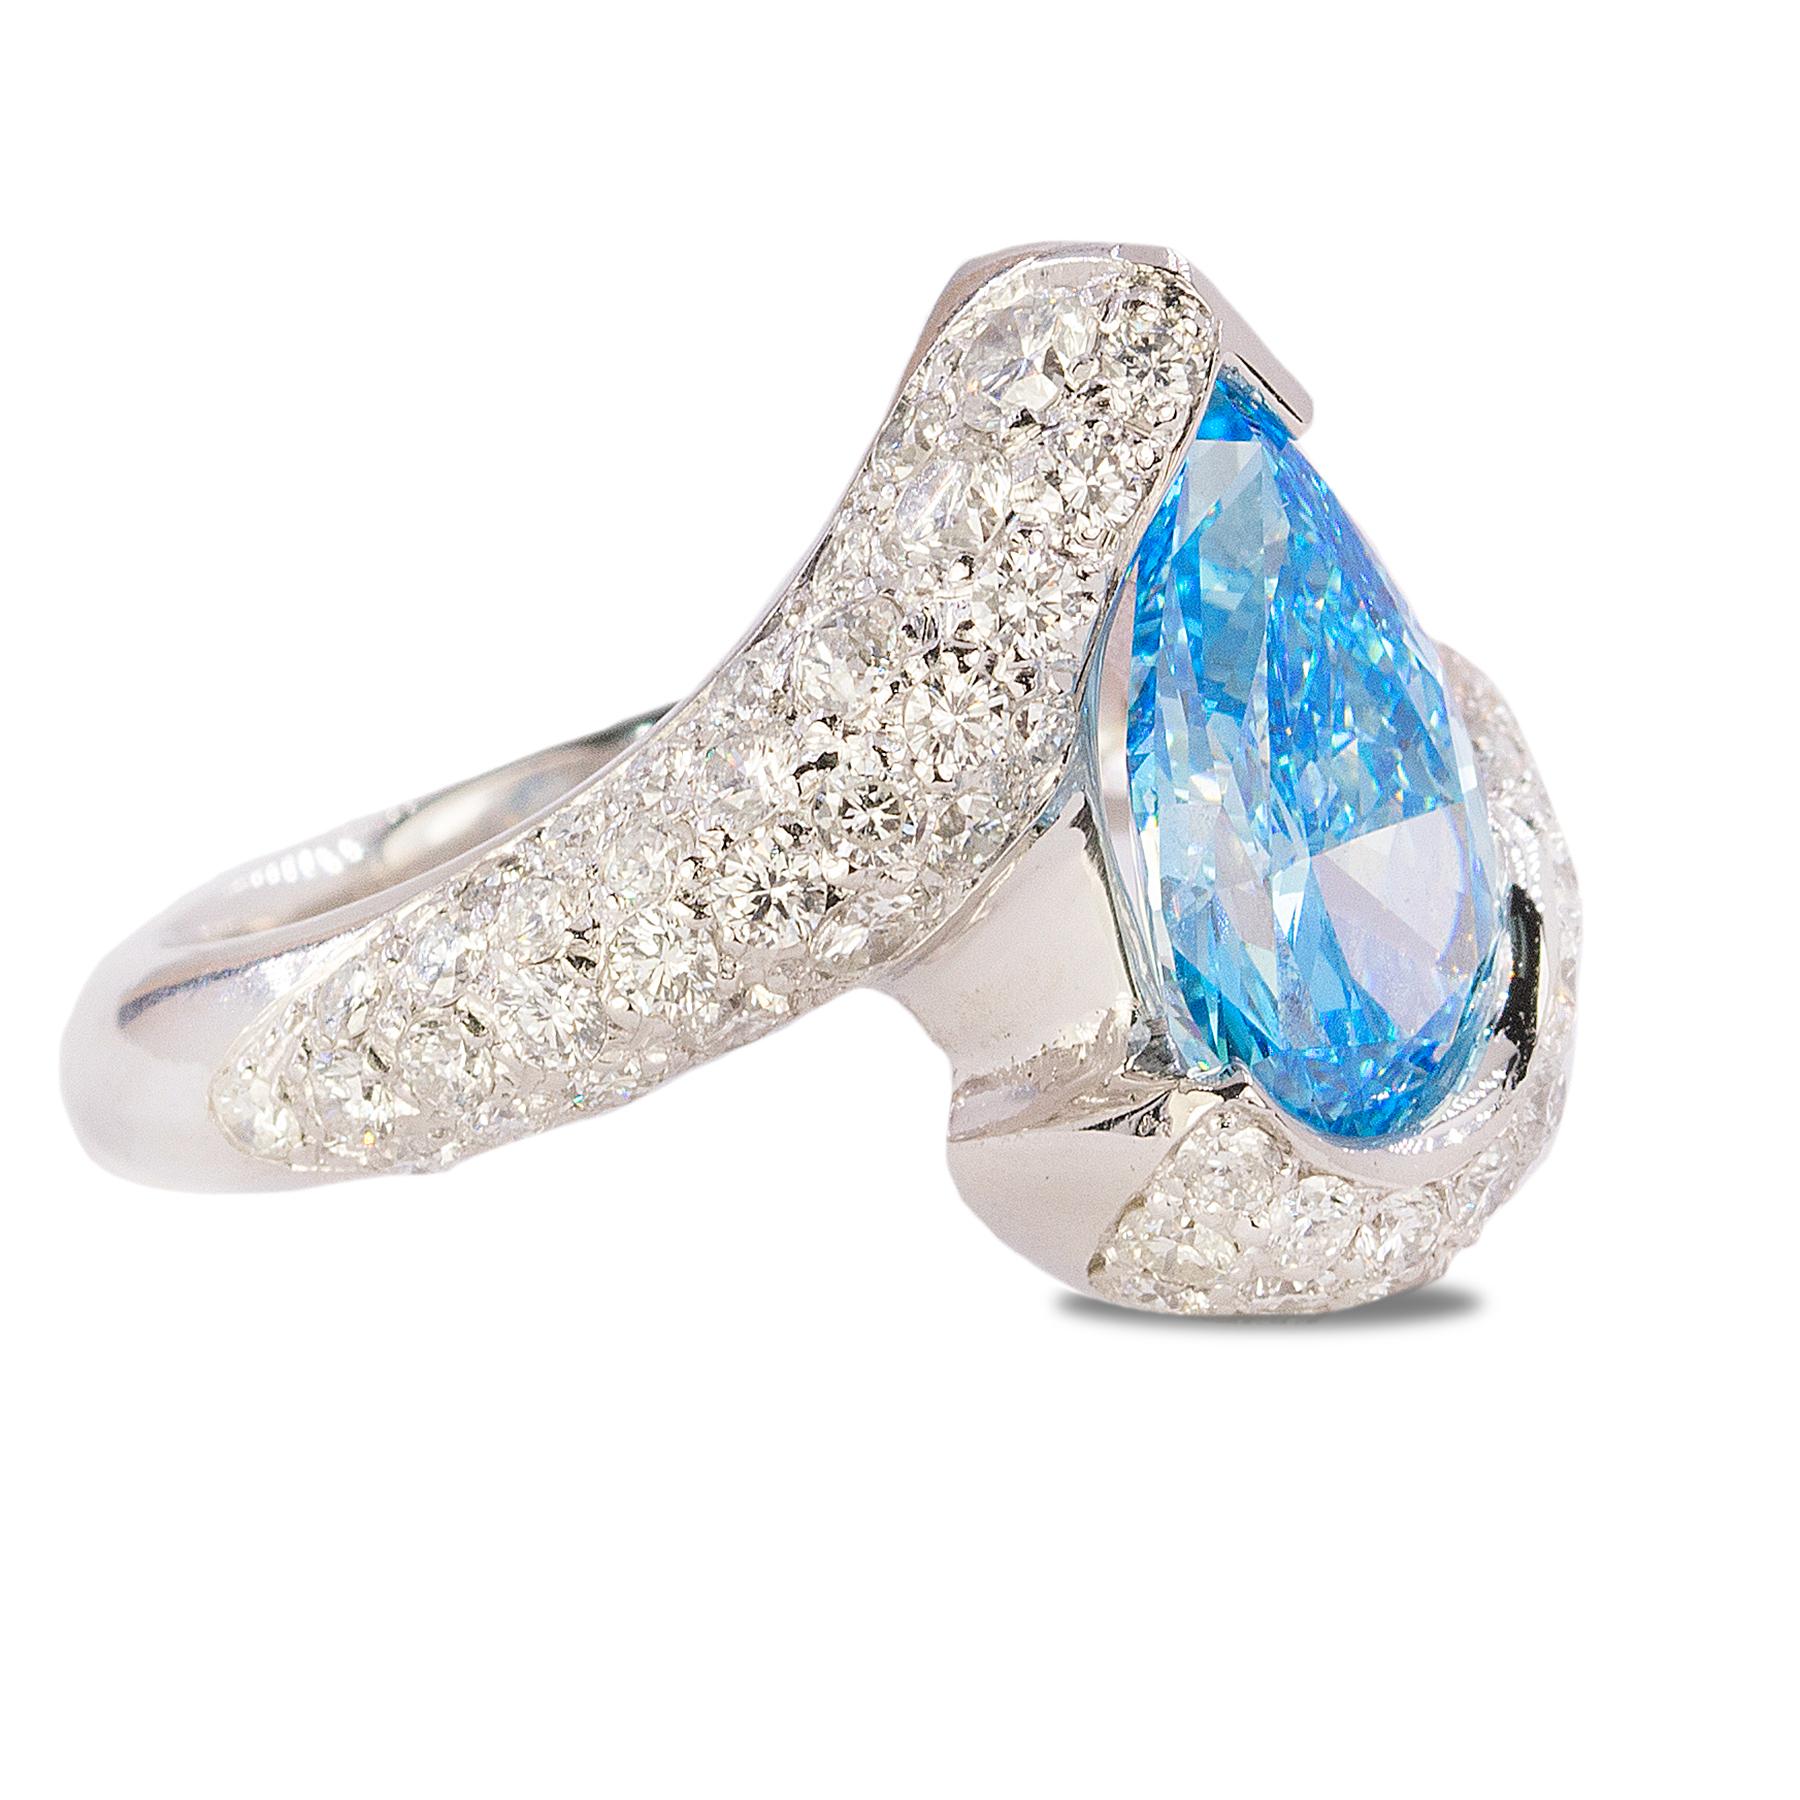 Bague en platier avec diamant en forme de poire certifié GIA HPHT Fancy Vivid Blue, VVS2 et 2,71 carats de diamants ronds brillants modernes sertis en pavage. 